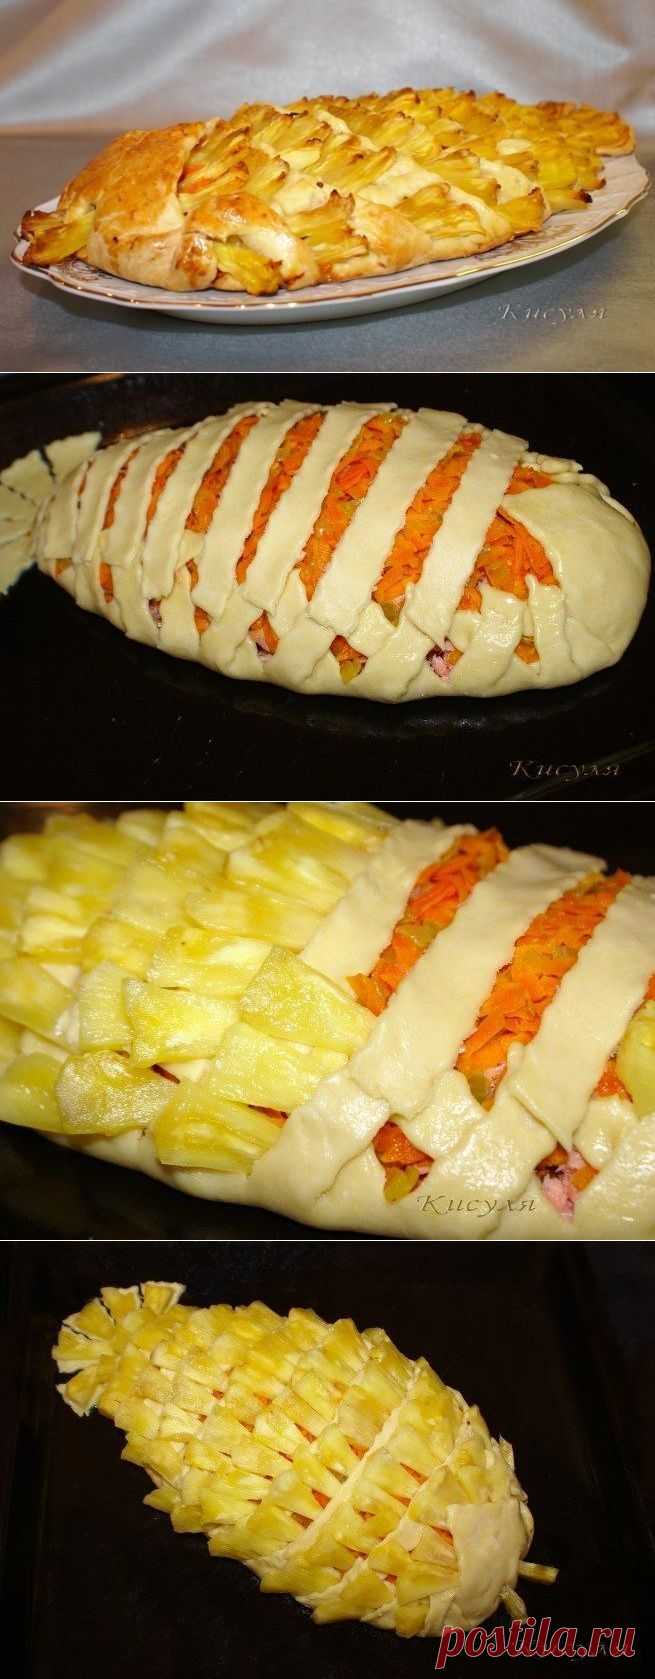 Как приготовить блюдо "пирог с рыбой и ананасом" - рецепт, ингридиенты и фотографии | sloosh